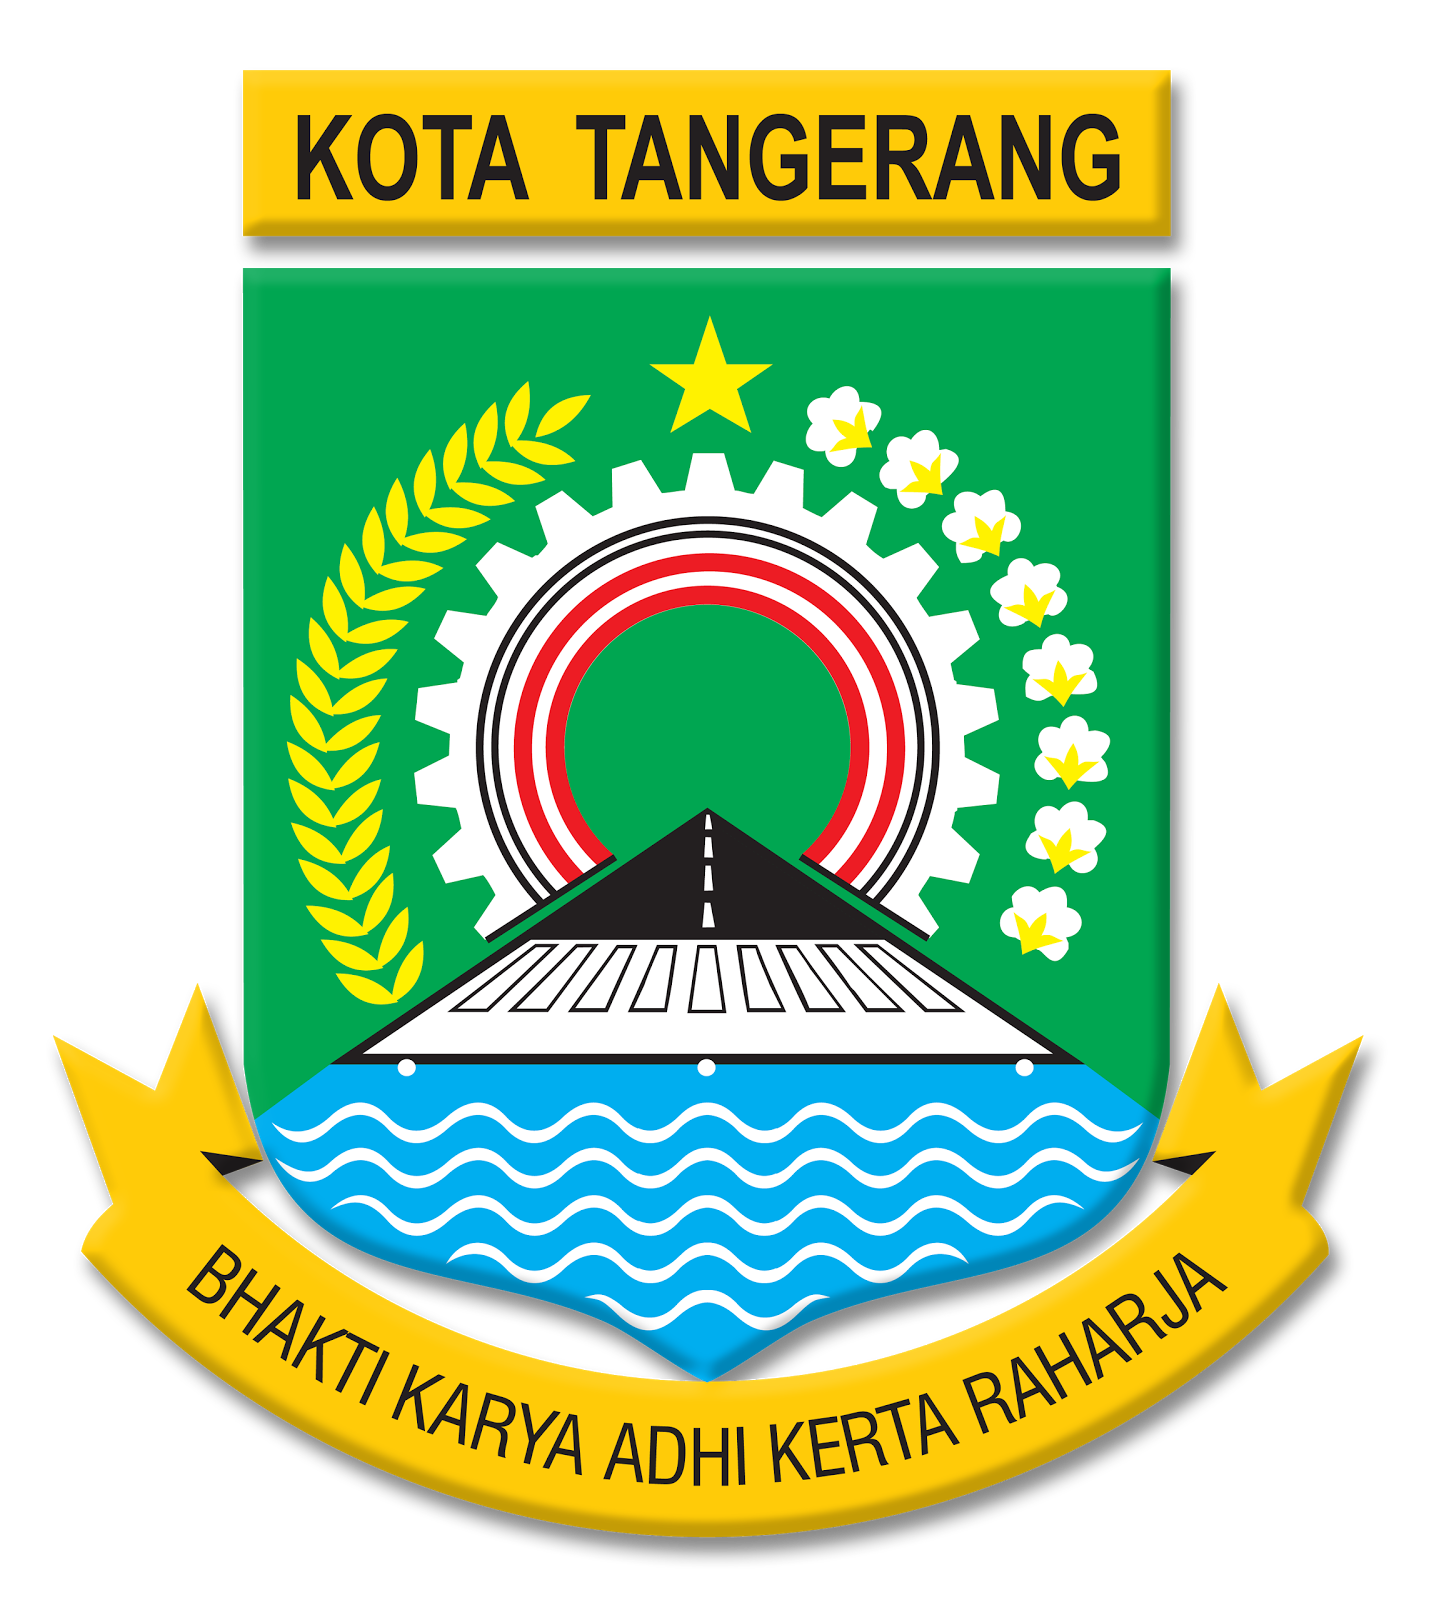 Kota Tangerang